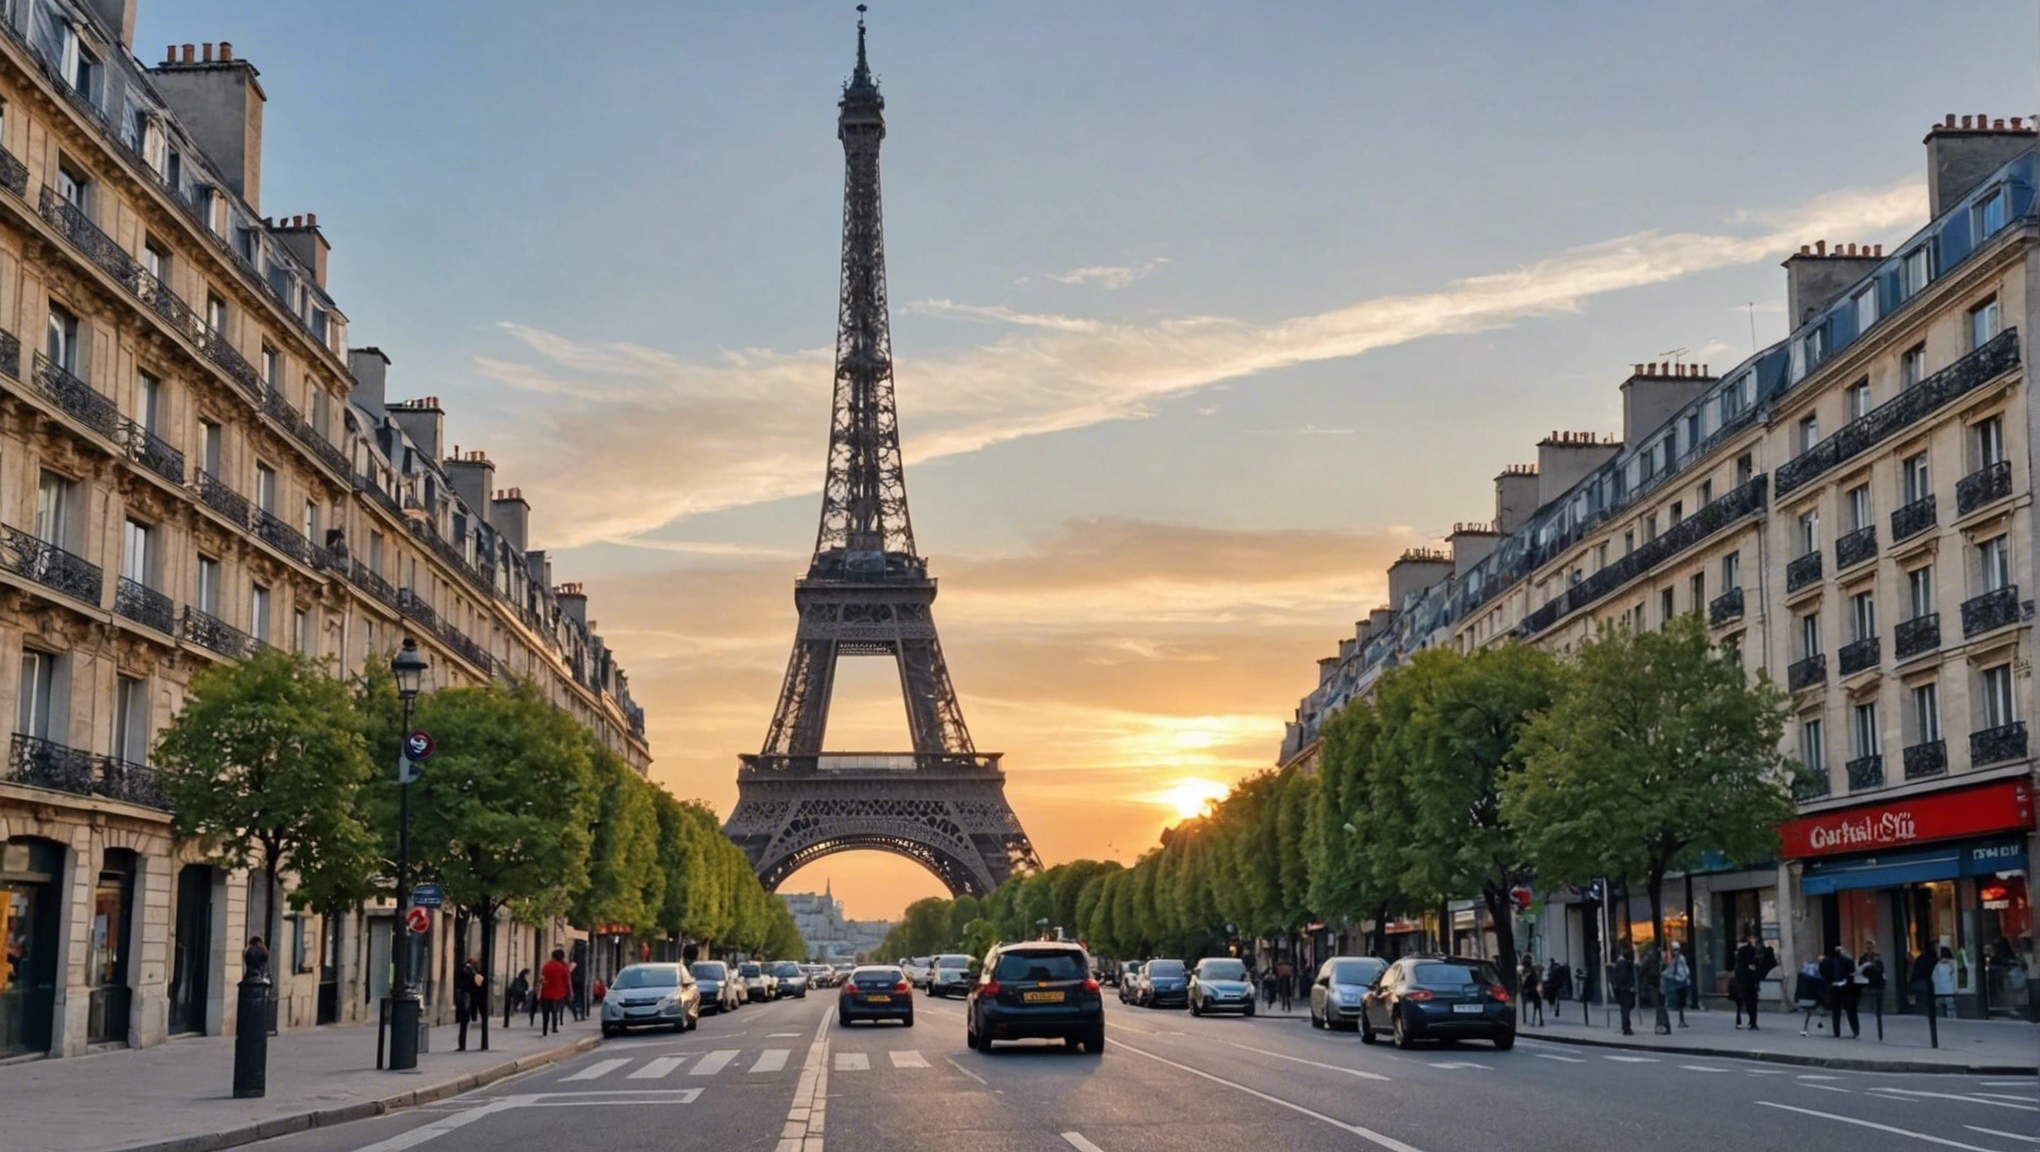 découvrez les dernières tendances, actualités et bons plans du parisien dans mots coupés : ne manquez pas ce qui se passe dans la capitale !